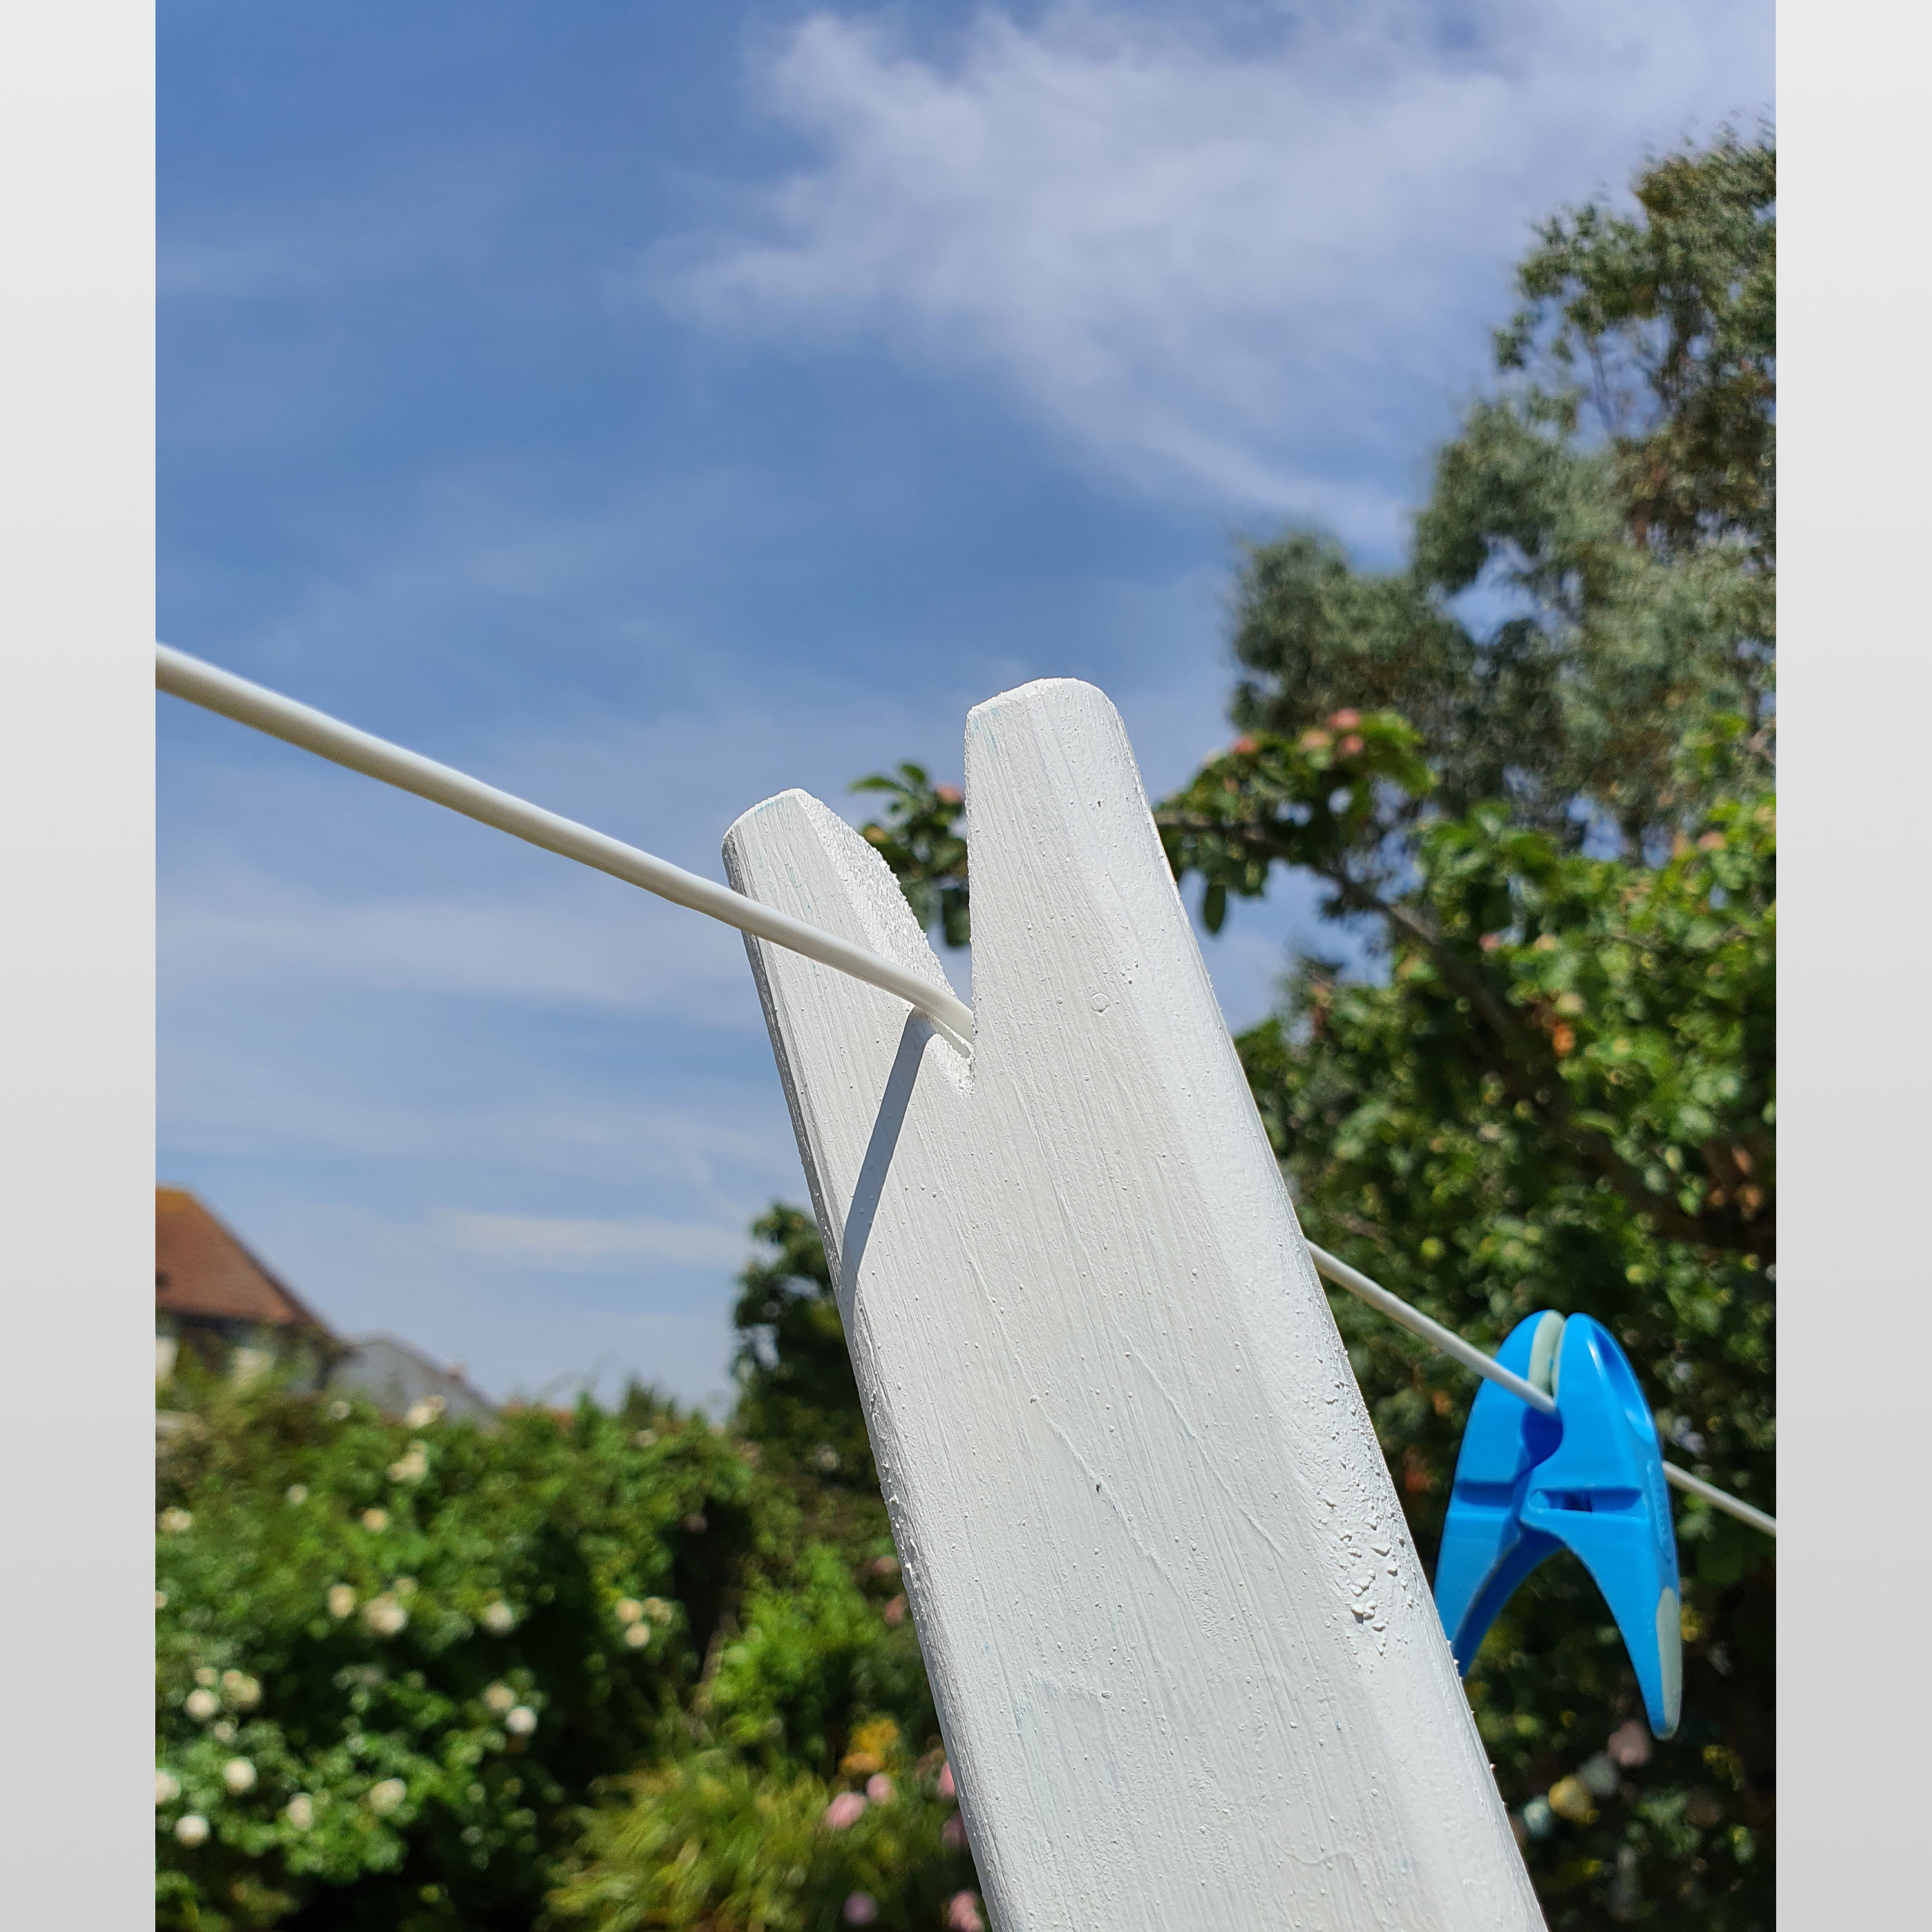 clothesline prop pole